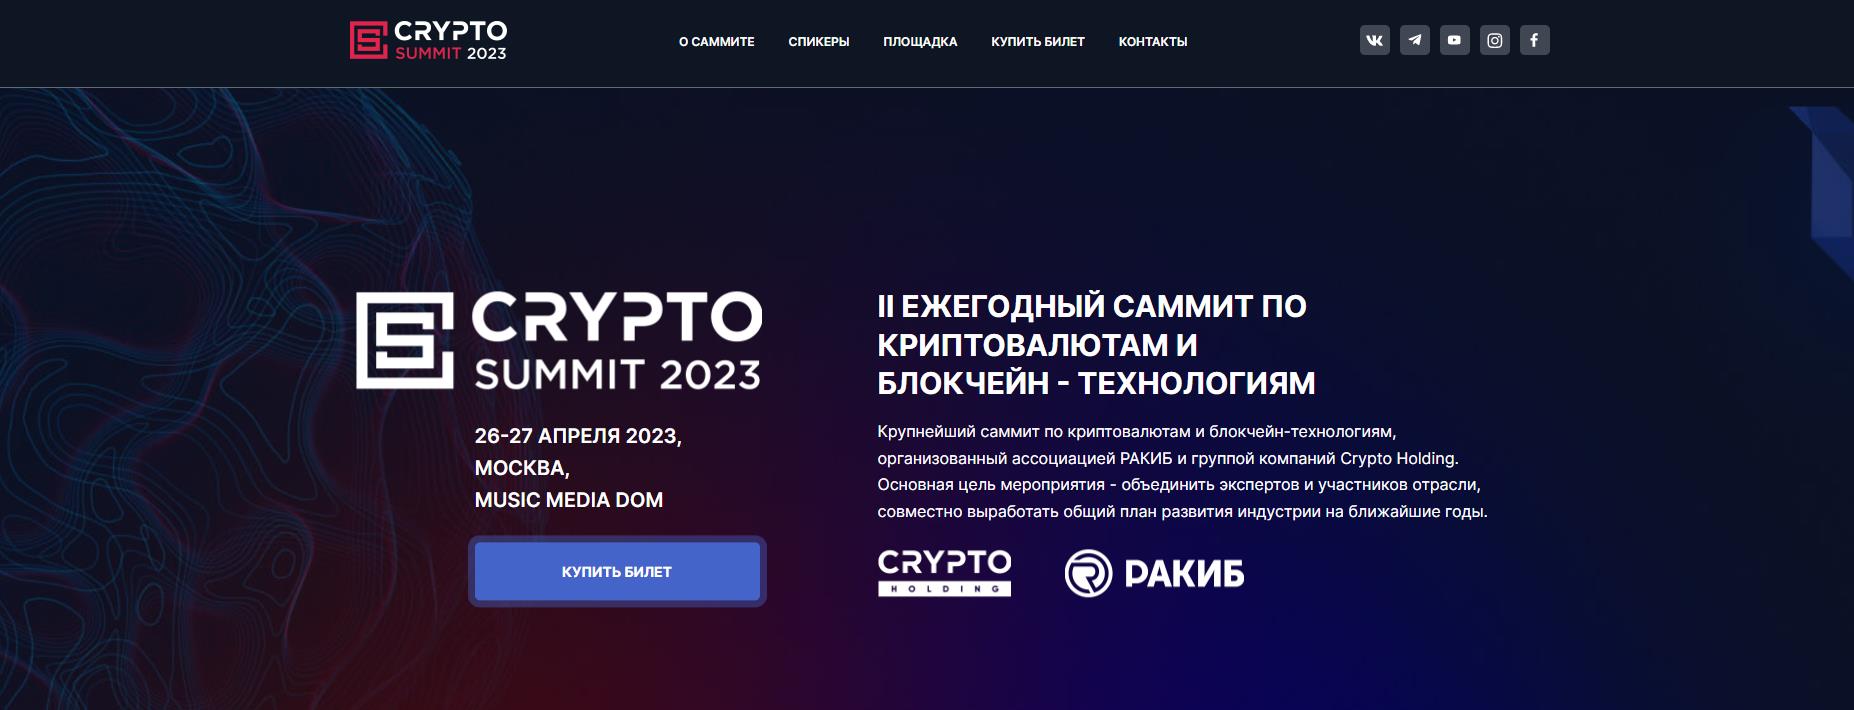 Invitación CRYPTO SUMMIT 2023/MOSCÚ/26-27 DE ABRIL